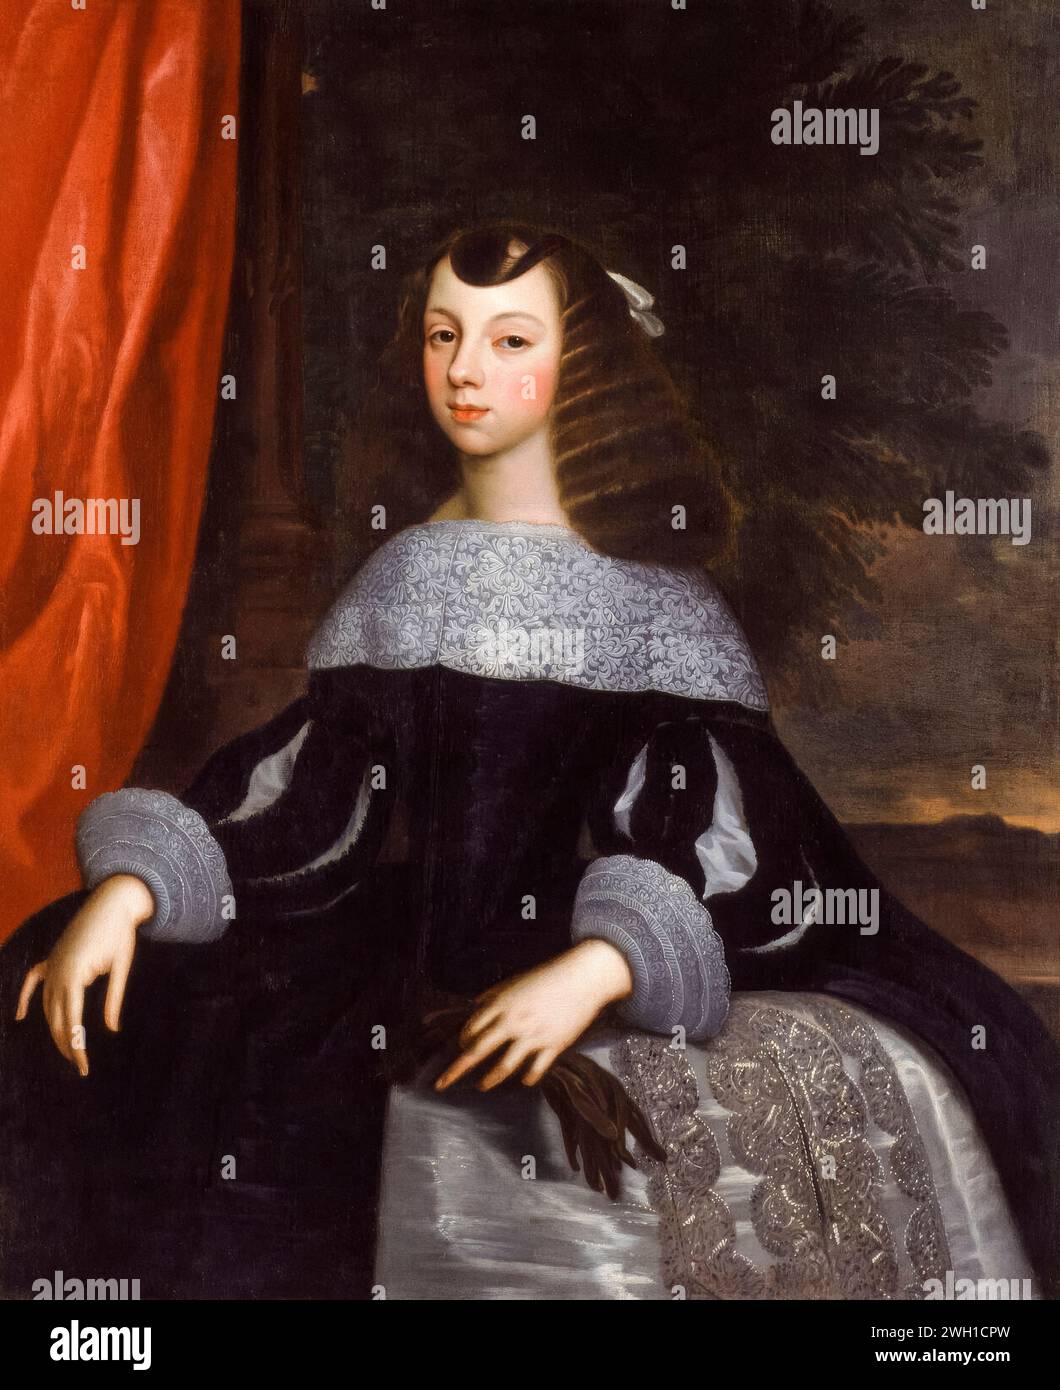 Caterina di Braganza (1638-1705), Regina consorte d'Inghilterra, Scozia e Irlanda (1662-1685), ritratto a olio su tela di o dopo Dirk Stoop 1660-1661 Foto Stock